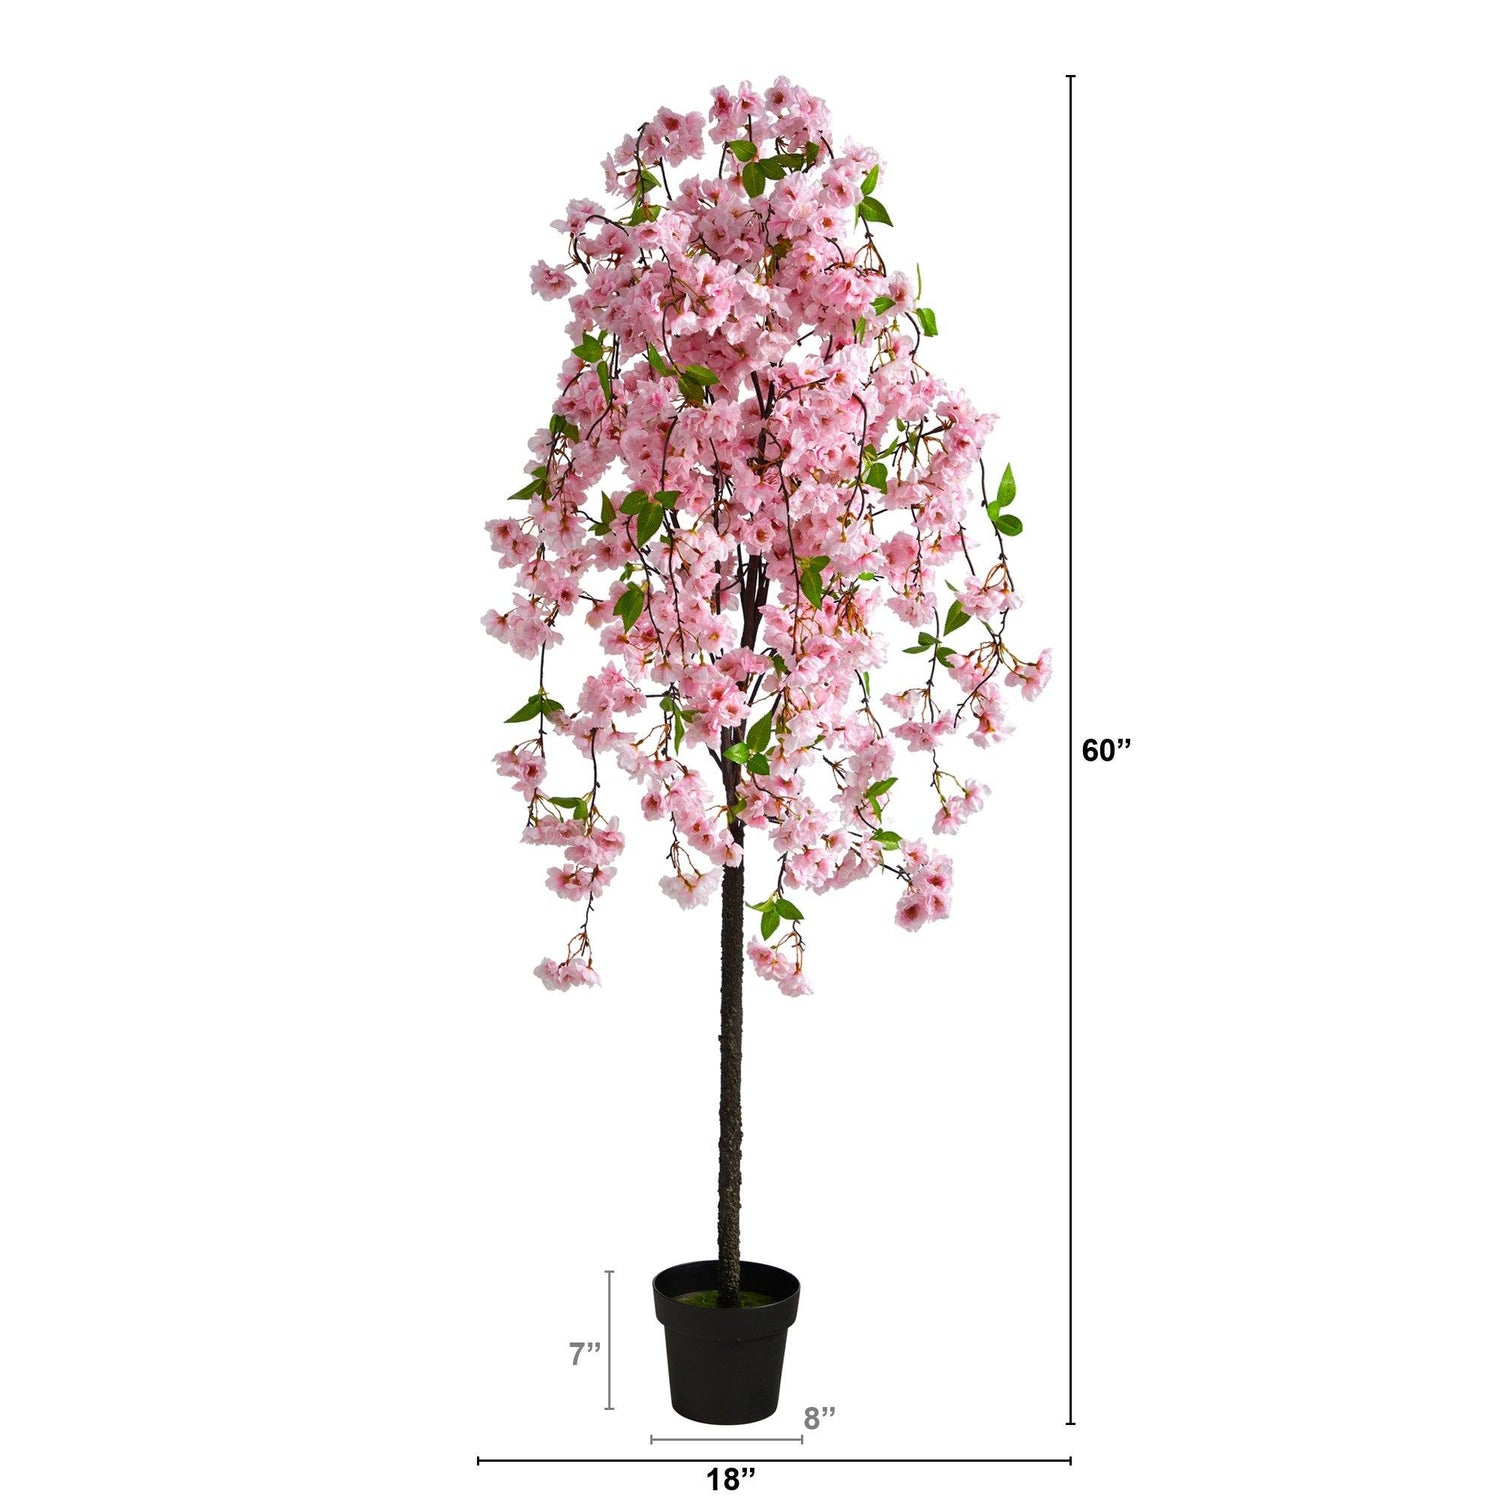 5' Artificial Cherry Blossom Tree